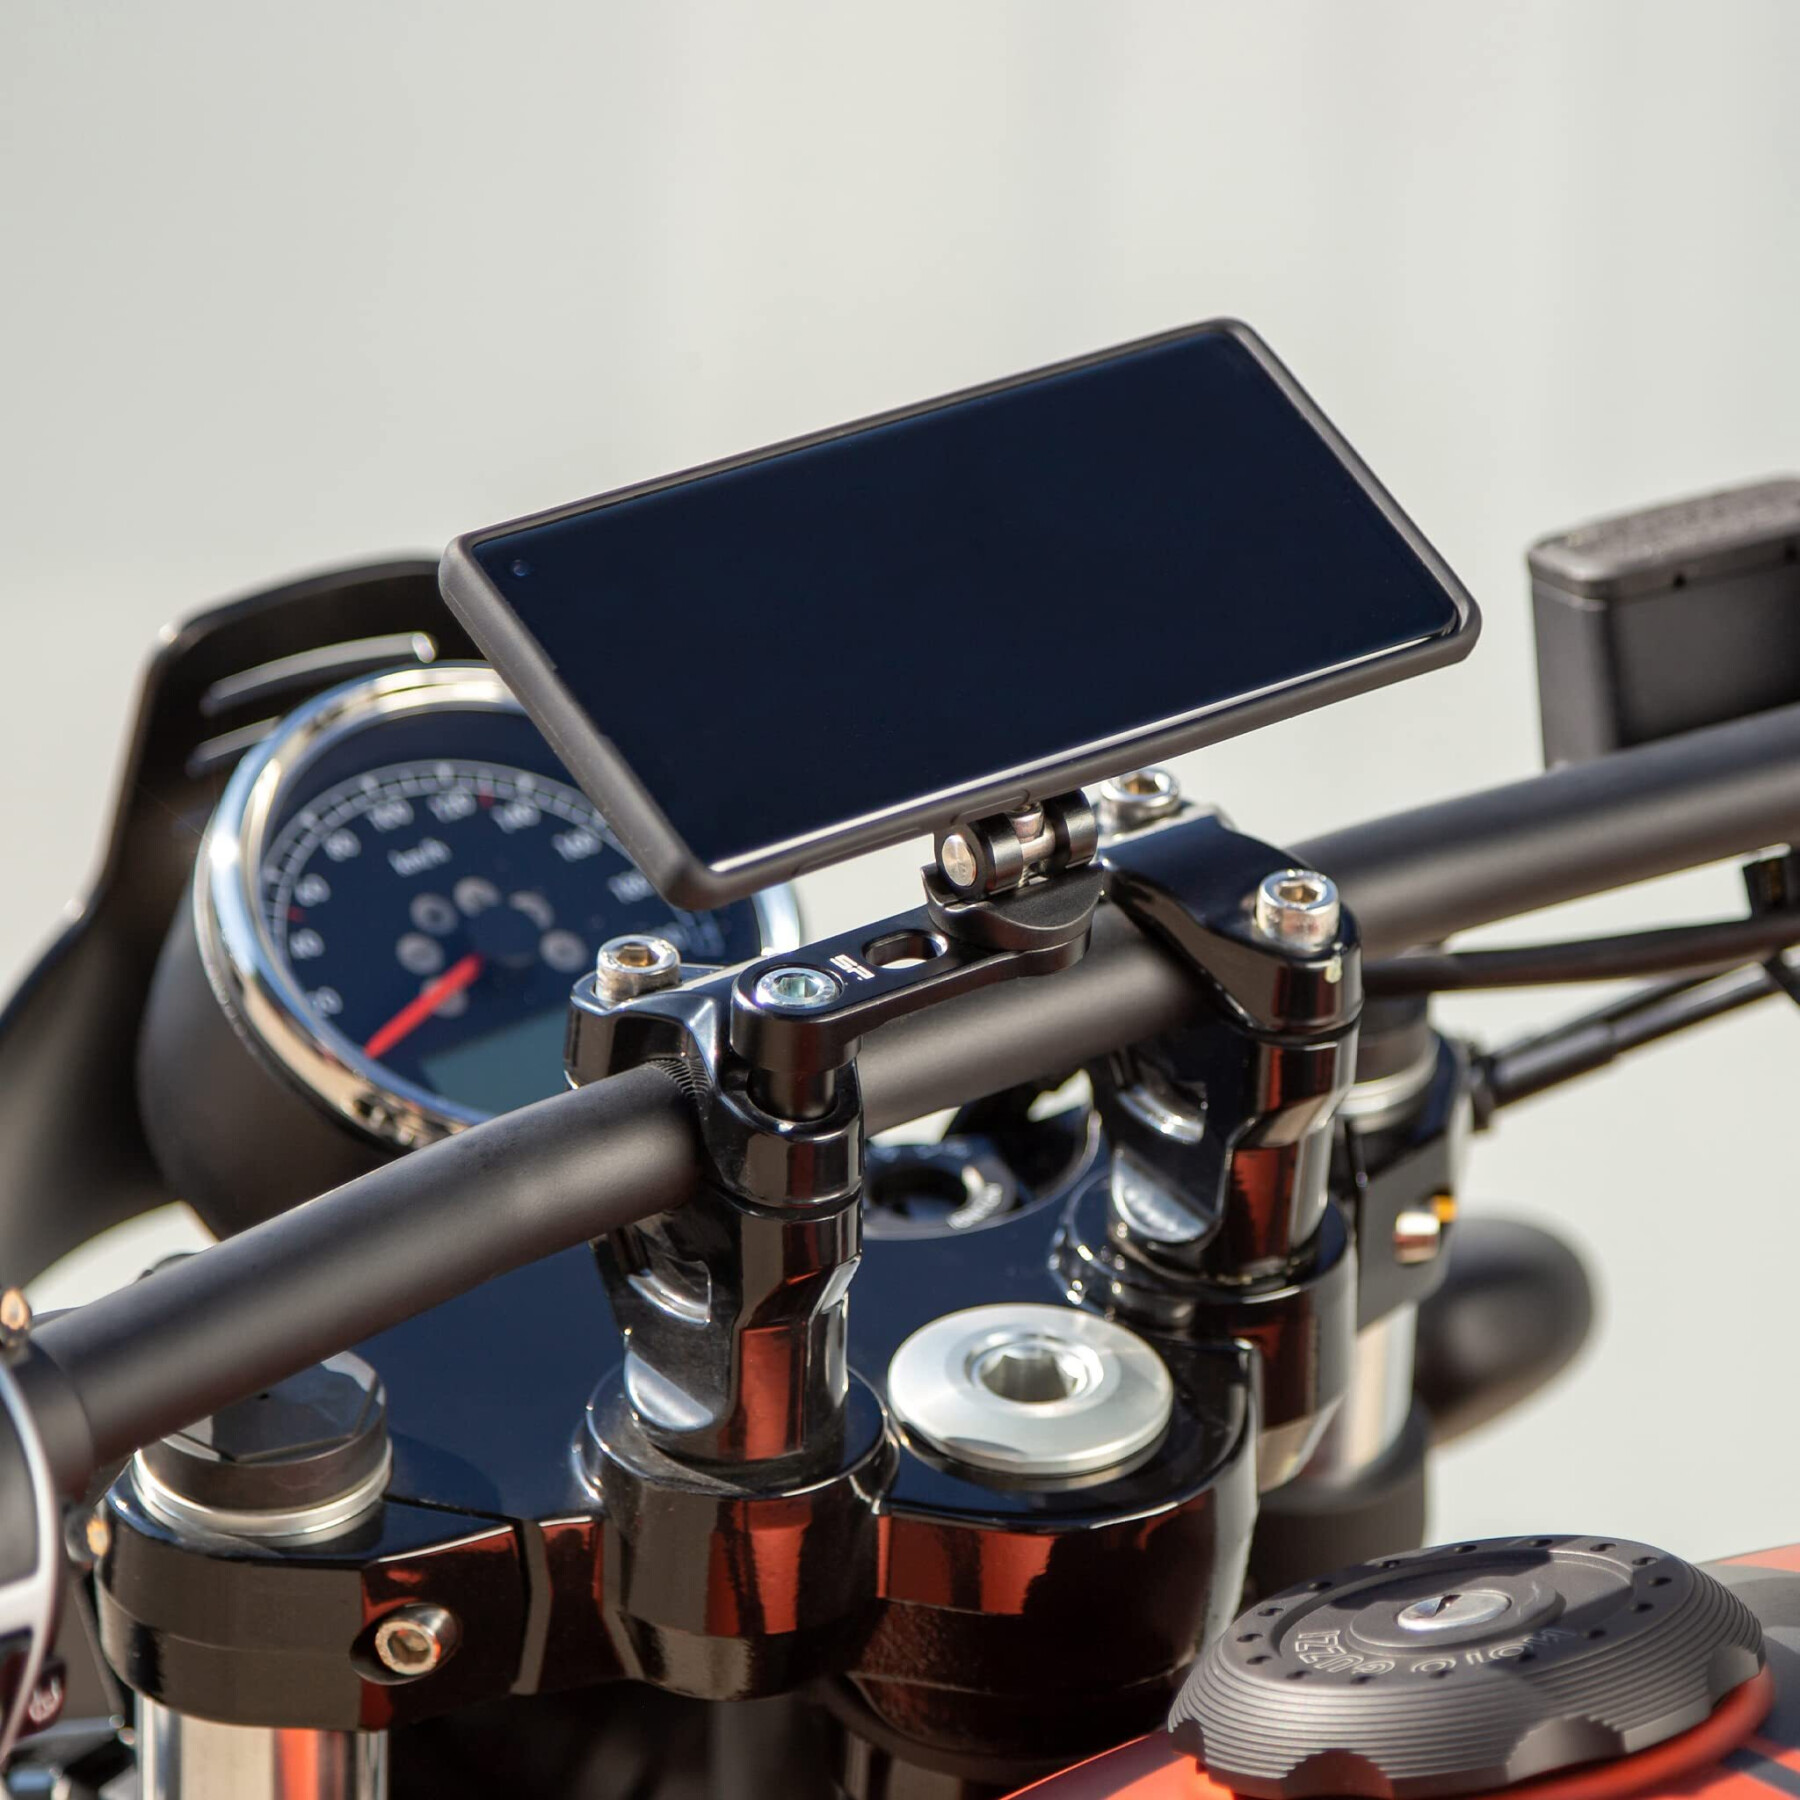 Motorfiets smartphonehouder Sp-Connect Mount Pro